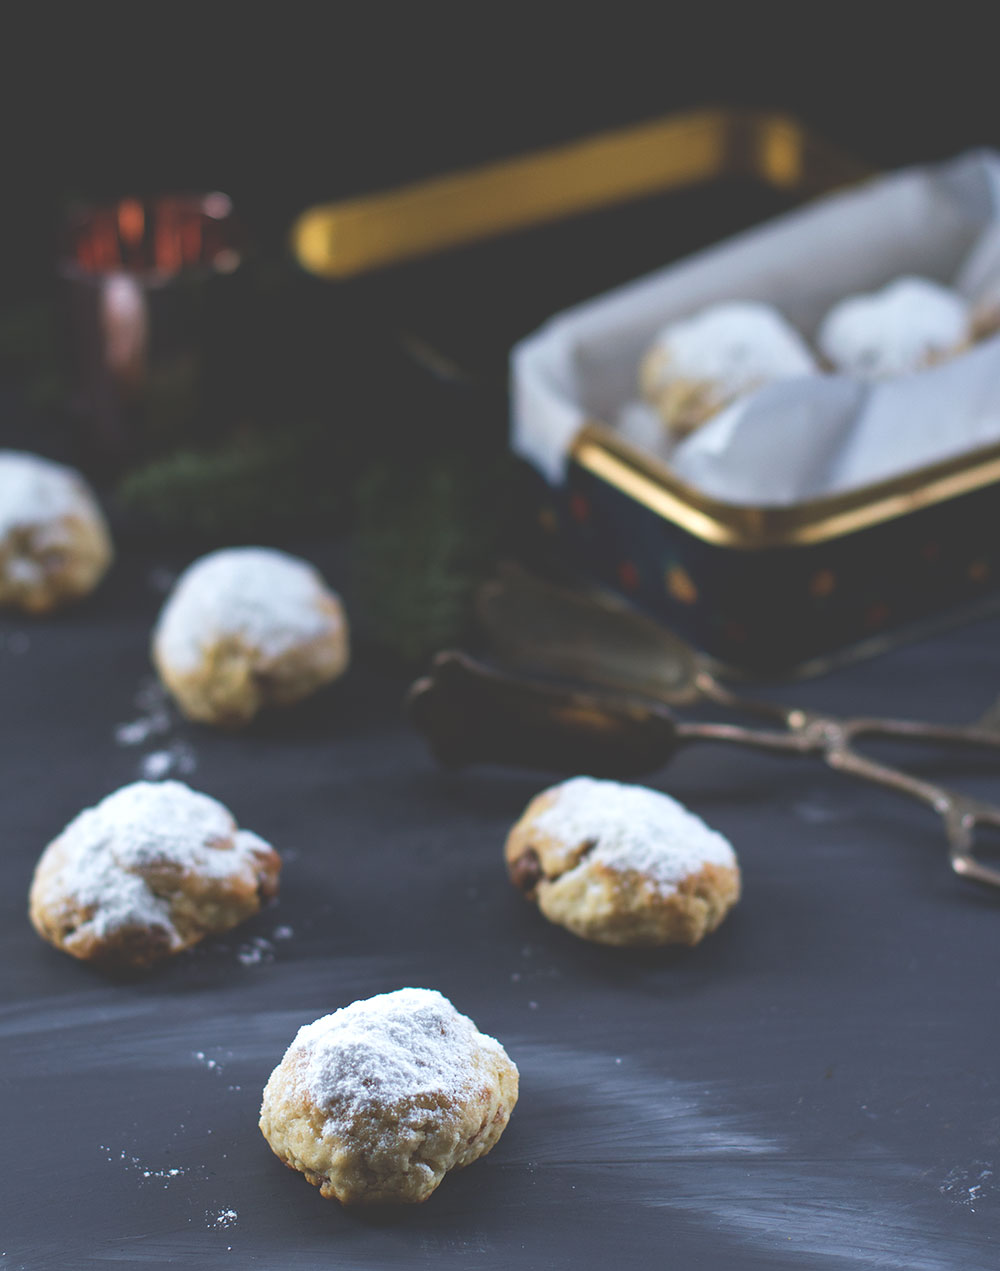 Rezept für Nougat-Stollenkonfekt mit Mandeln | moeyskitchen.com #stollenkonfekt #nougatstollen #weihnachtsplätzchen #weihnachtskekse #weihnachtsbäckerei #rezepte #foodblogger